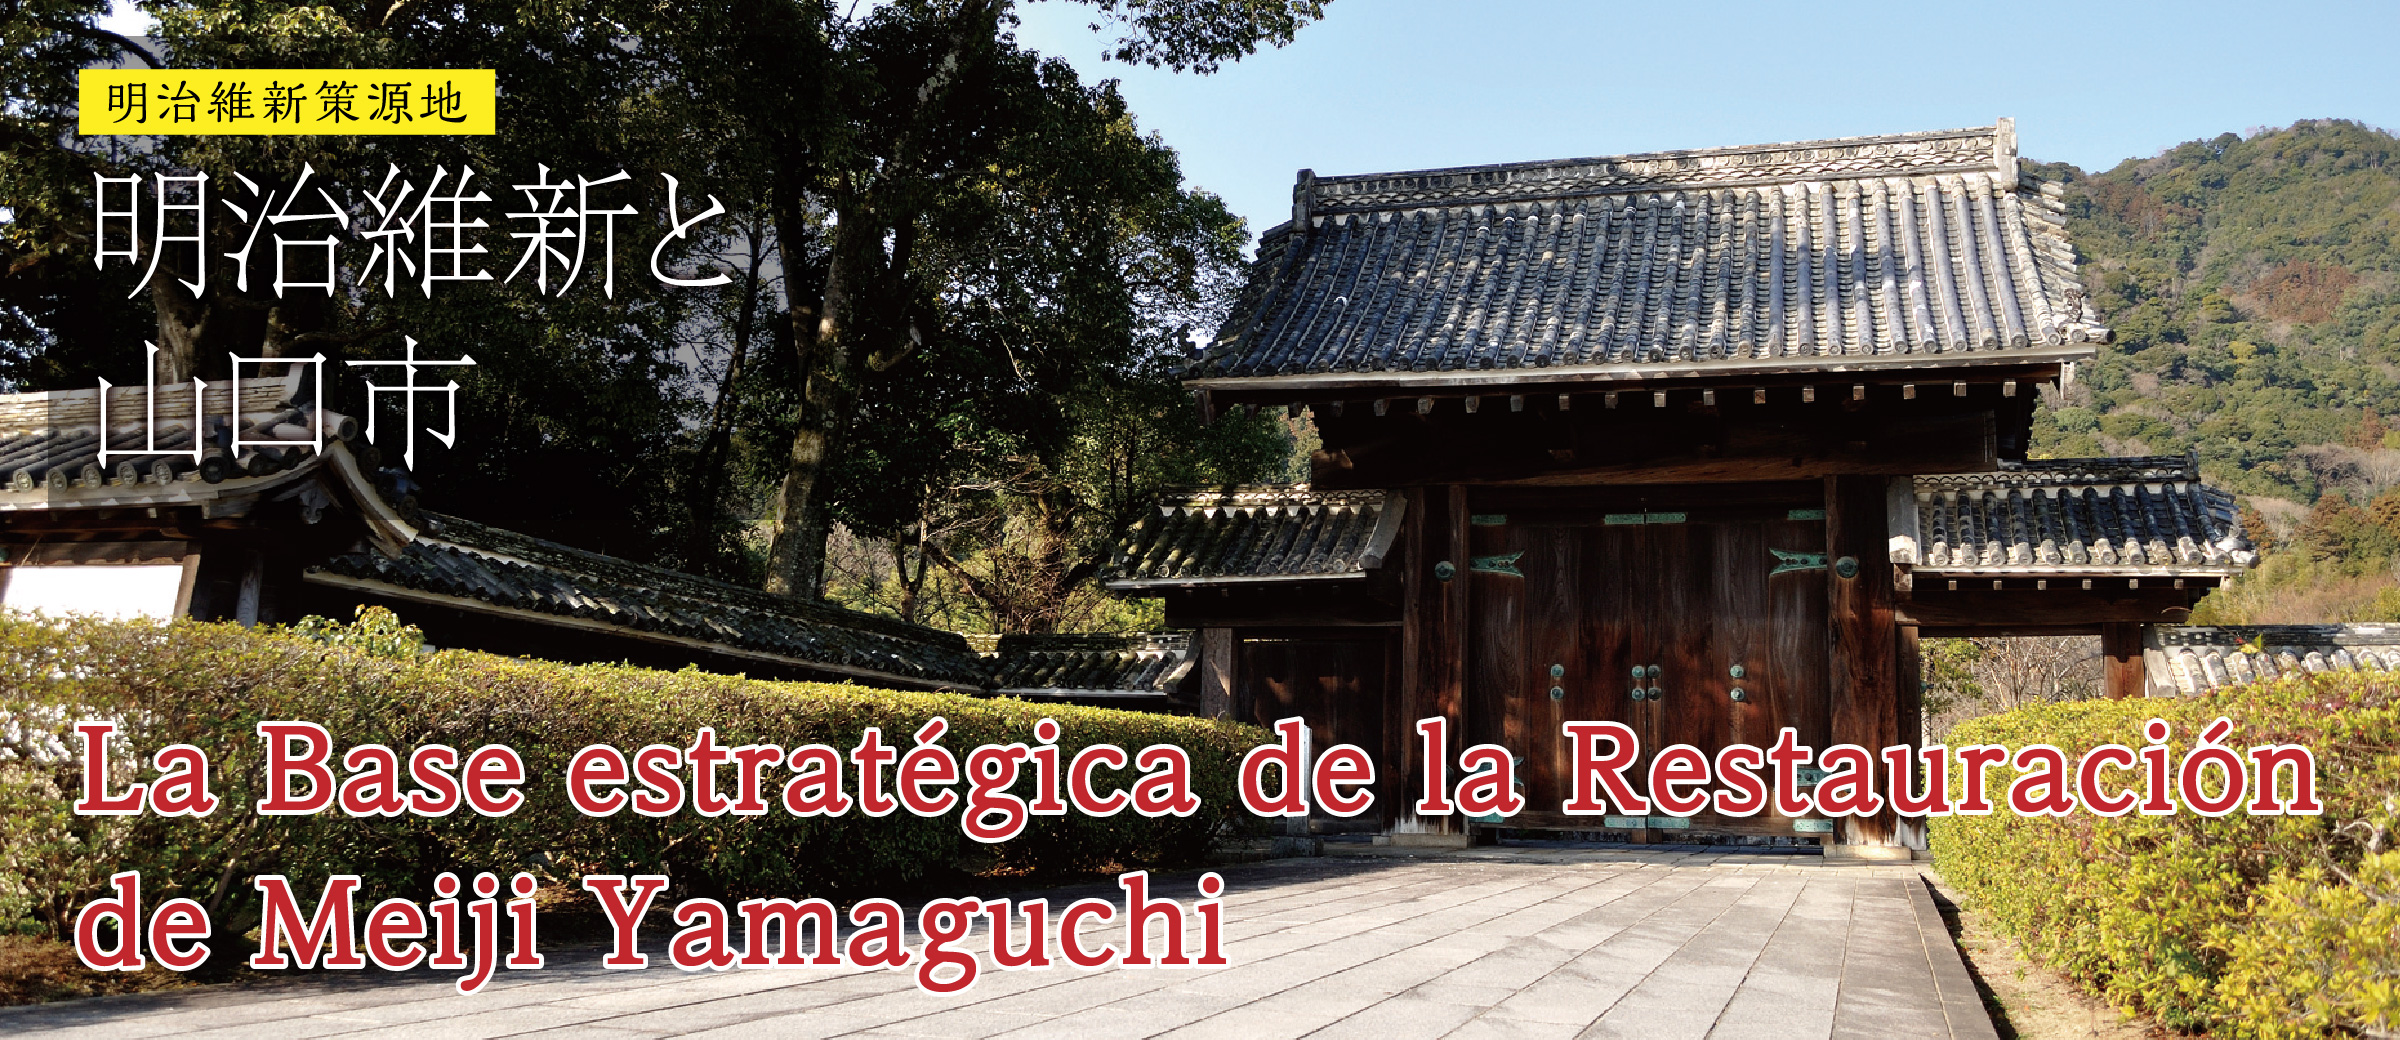 La base estratégica de la Restauración Meiji